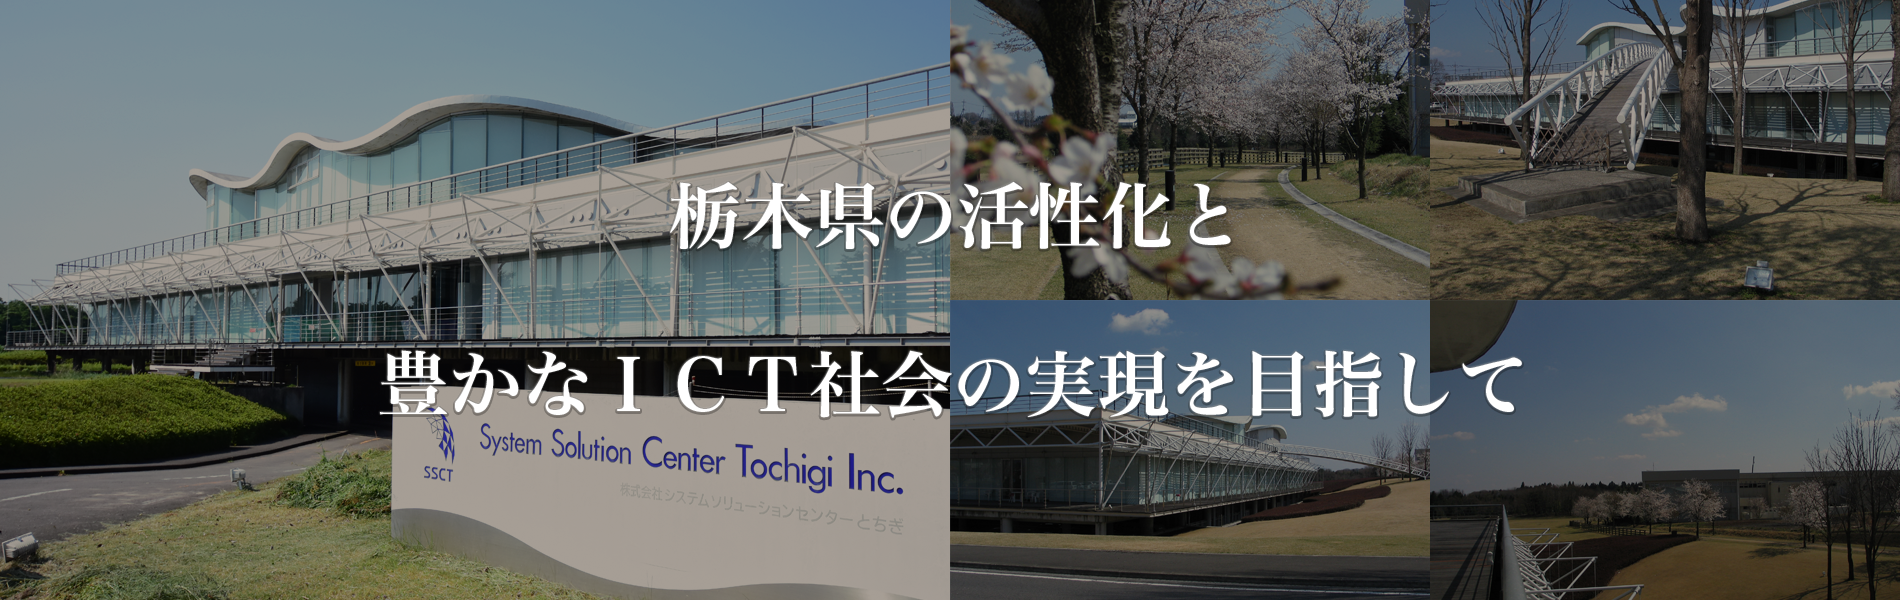 栃木県の活性化と豊かなICT社会の実現を目指して